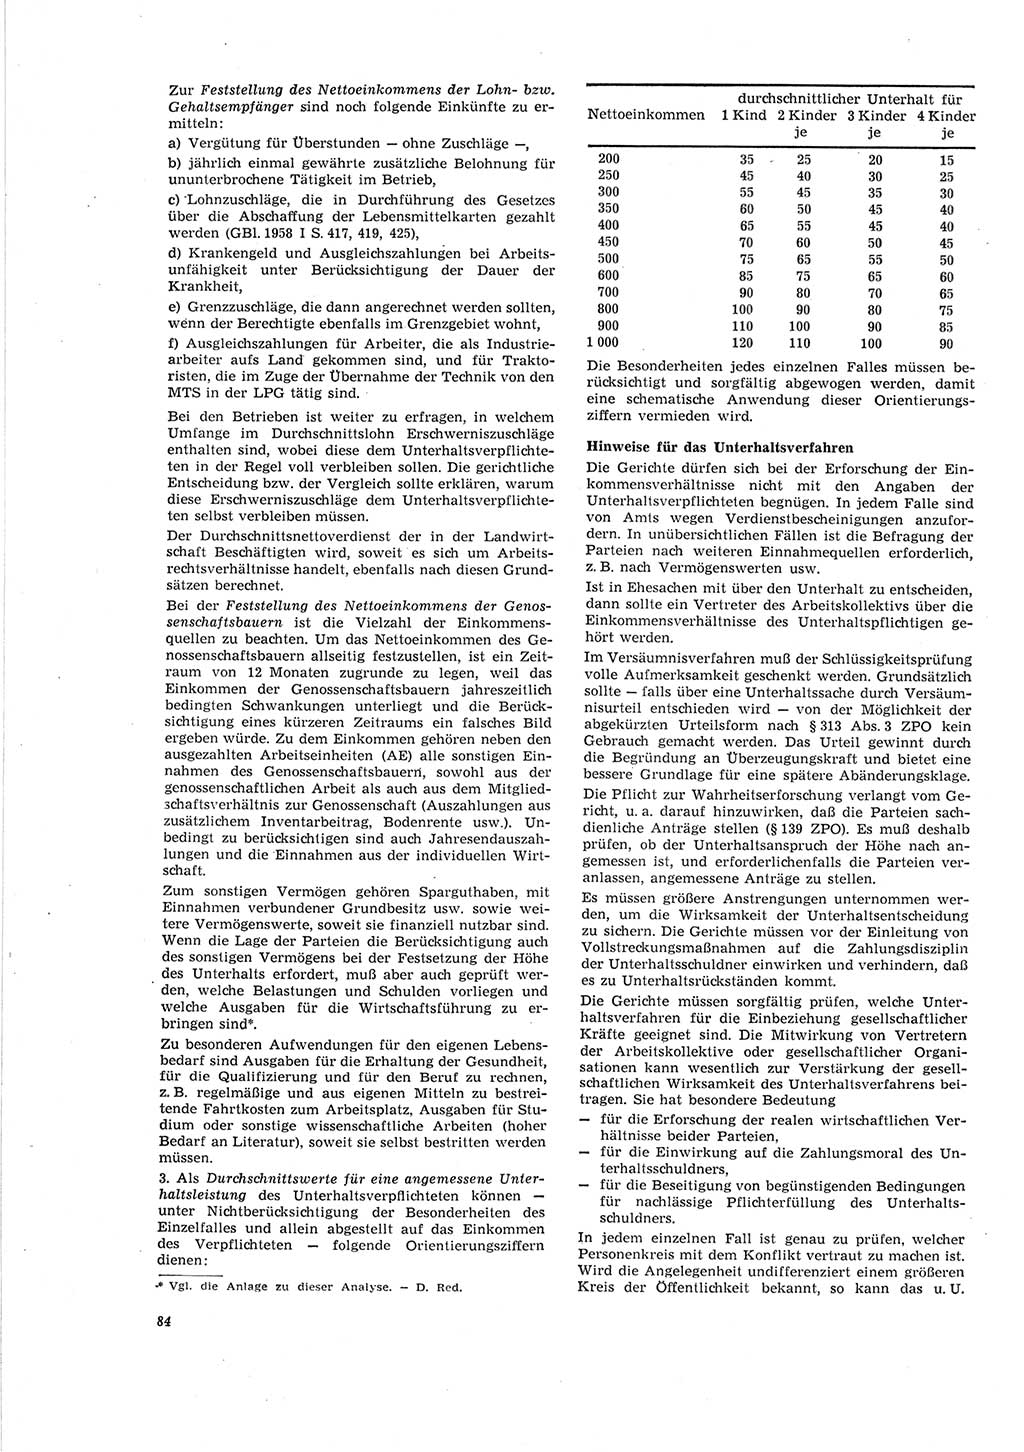 Neue Justiz (NJ), Zeitschrift für Recht und Rechtswissenschaft [Deutsche Demokratische Republik (DDR)], 19. Jahrgang 1965, Seite 84 (NJ DDR 1965, S. 84)